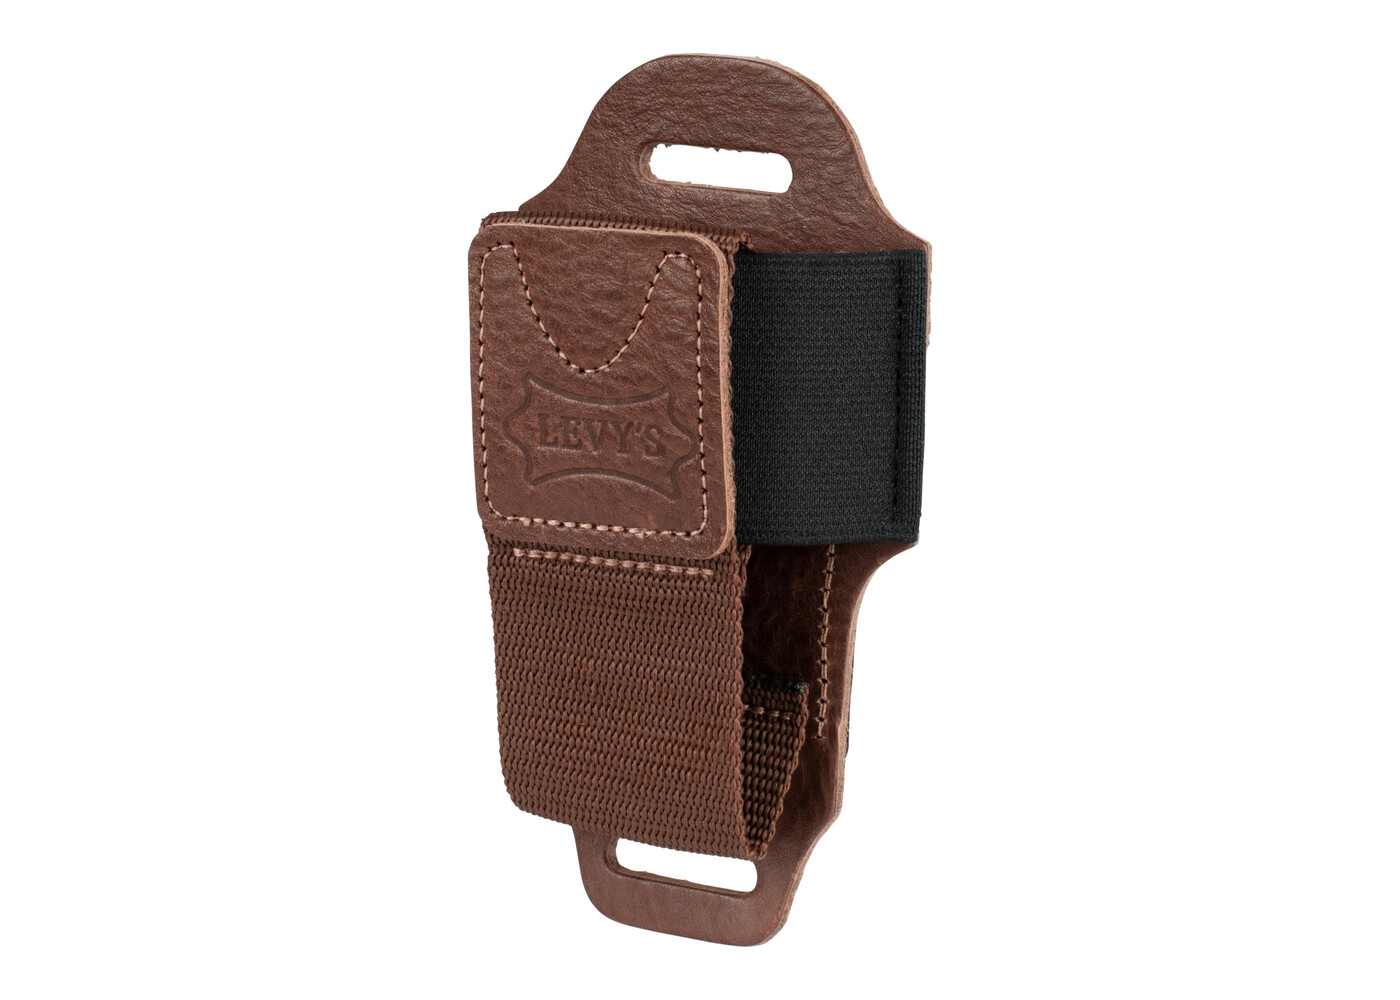 Levy's Wireless Transmitter Bodypack Holder - Brown Leather - John